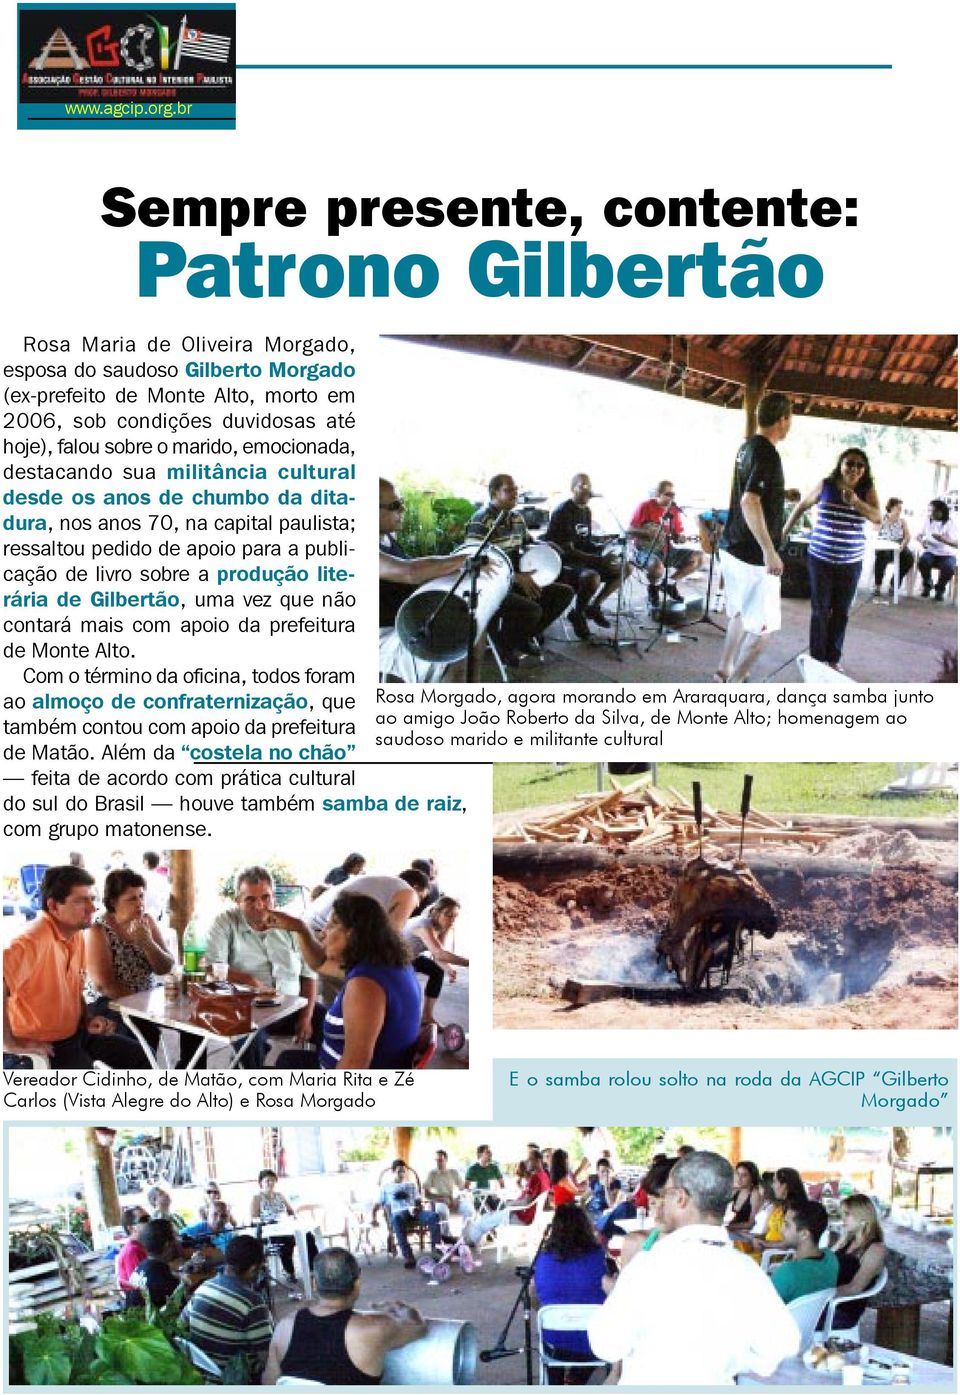 produção literária de Gilbertão, uma vez que não contará mais com apoio da prefeitura de Monte Alto.